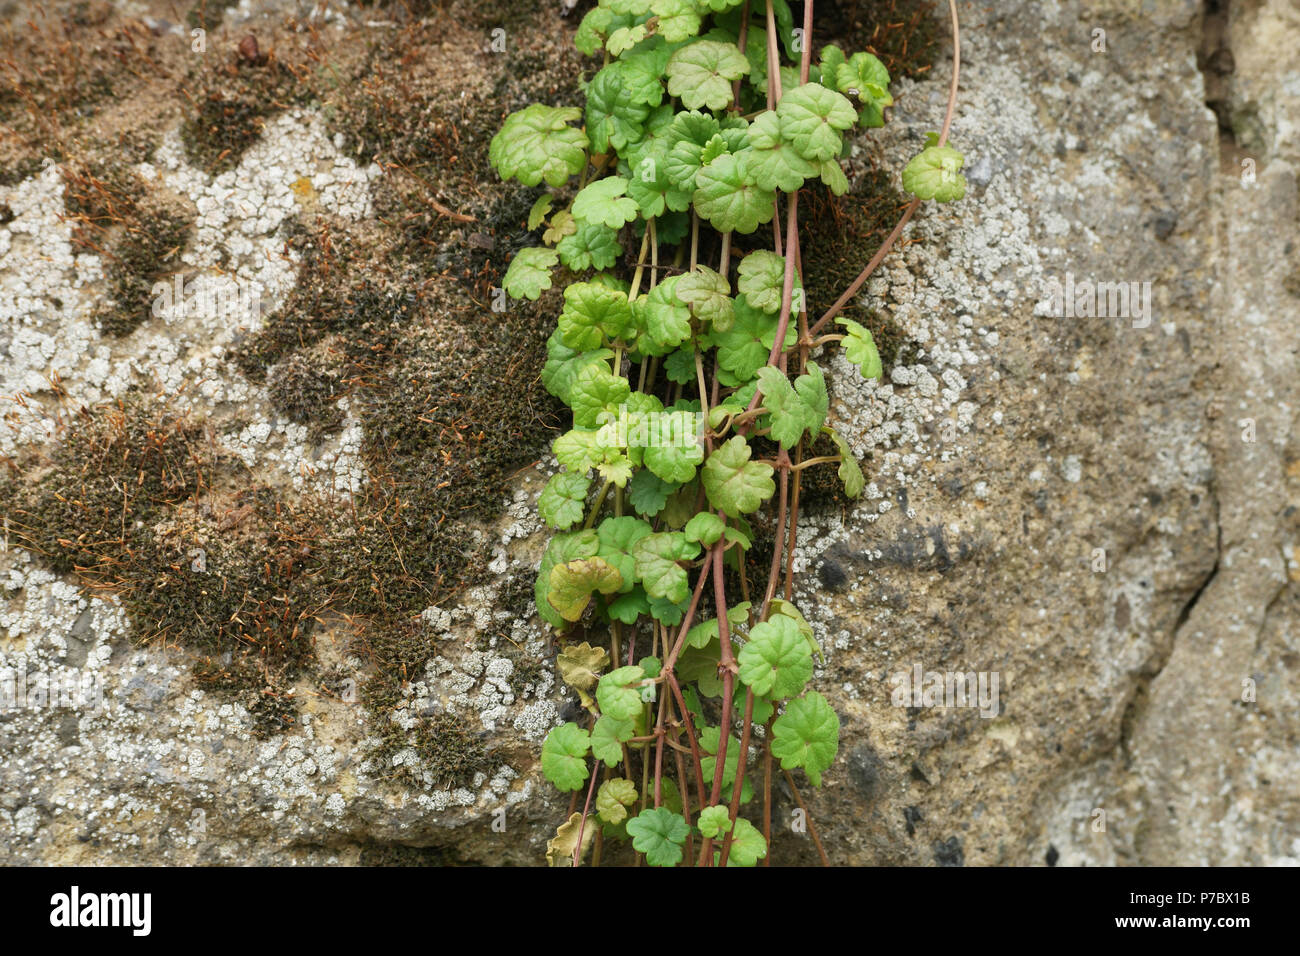 Glechoma hederacea (Gundermann) (ground-ivy) (lierre terrestre) Stock Photo